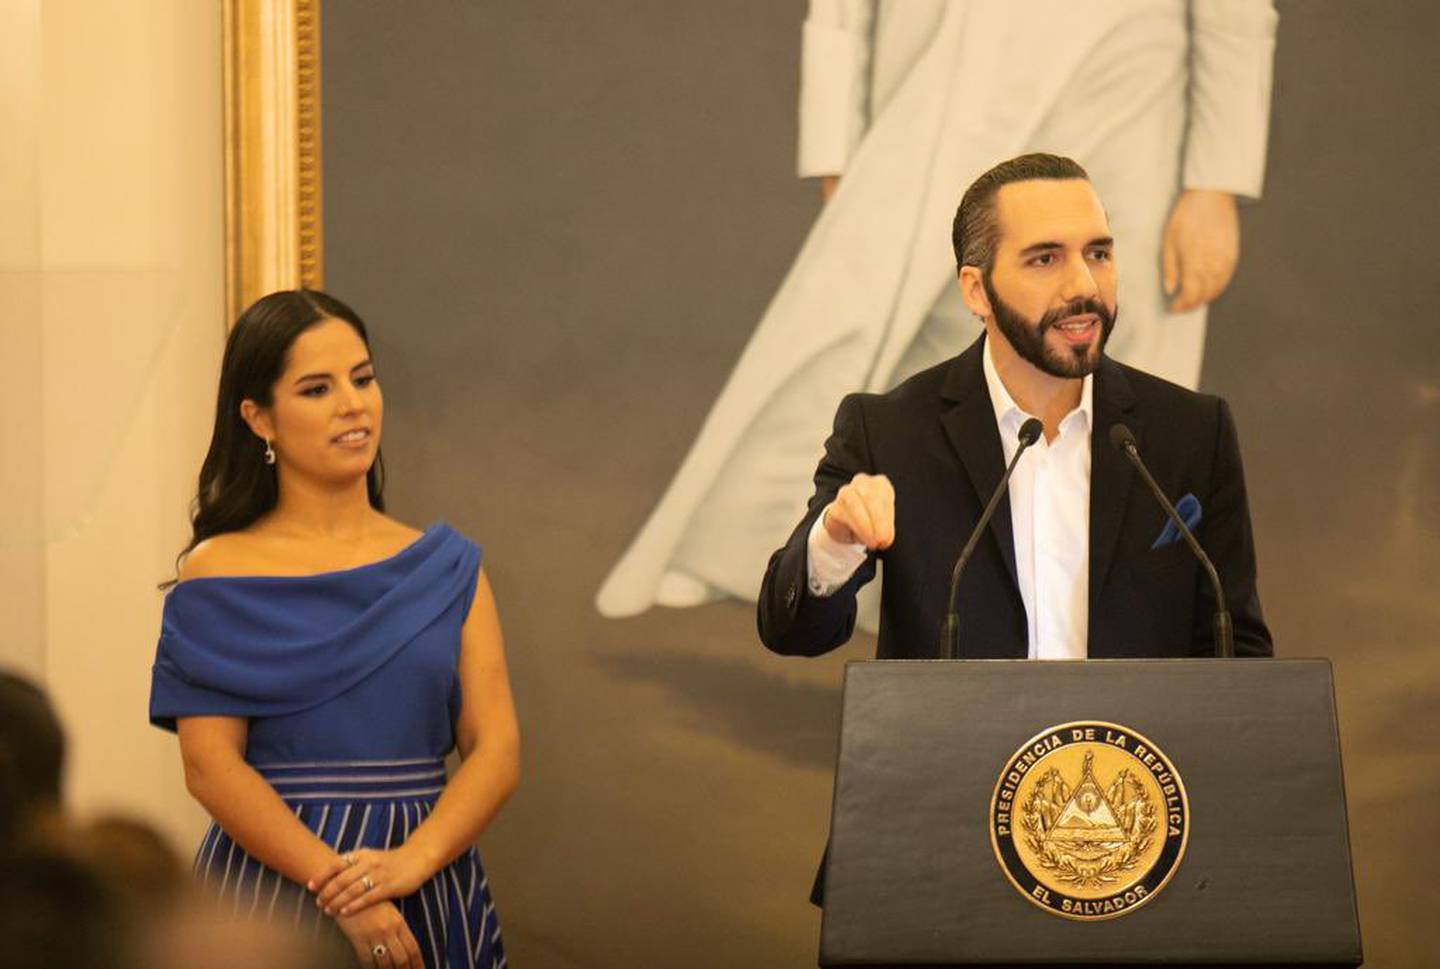 Photo: El Salvador's Presidency